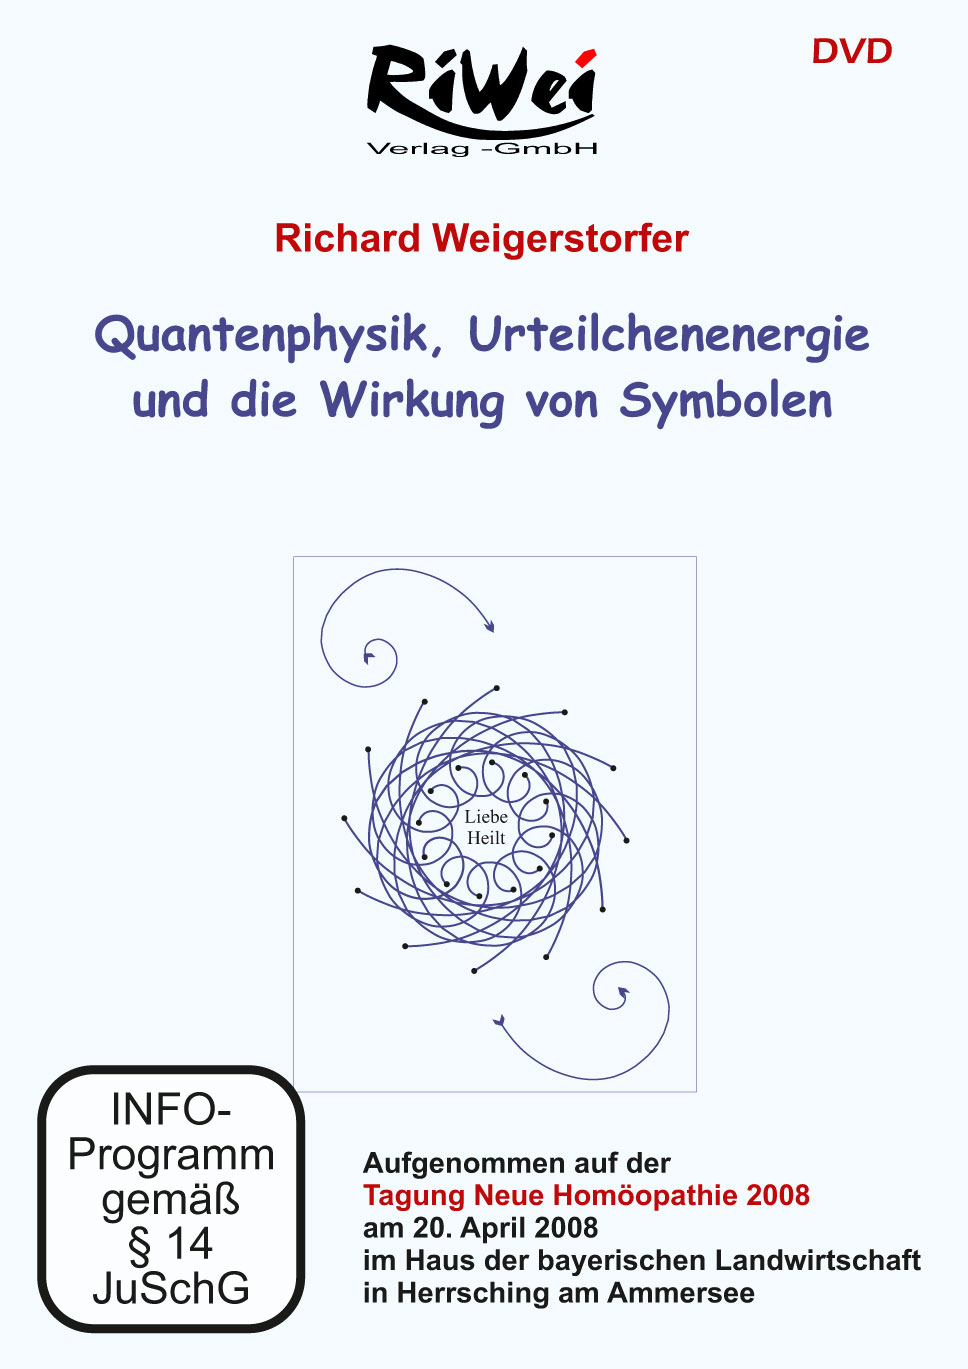 Richard Weigerstorfer - Quantenphysik, Urteilchenenergie und die Wirkung von Symbolen - Film Downloa